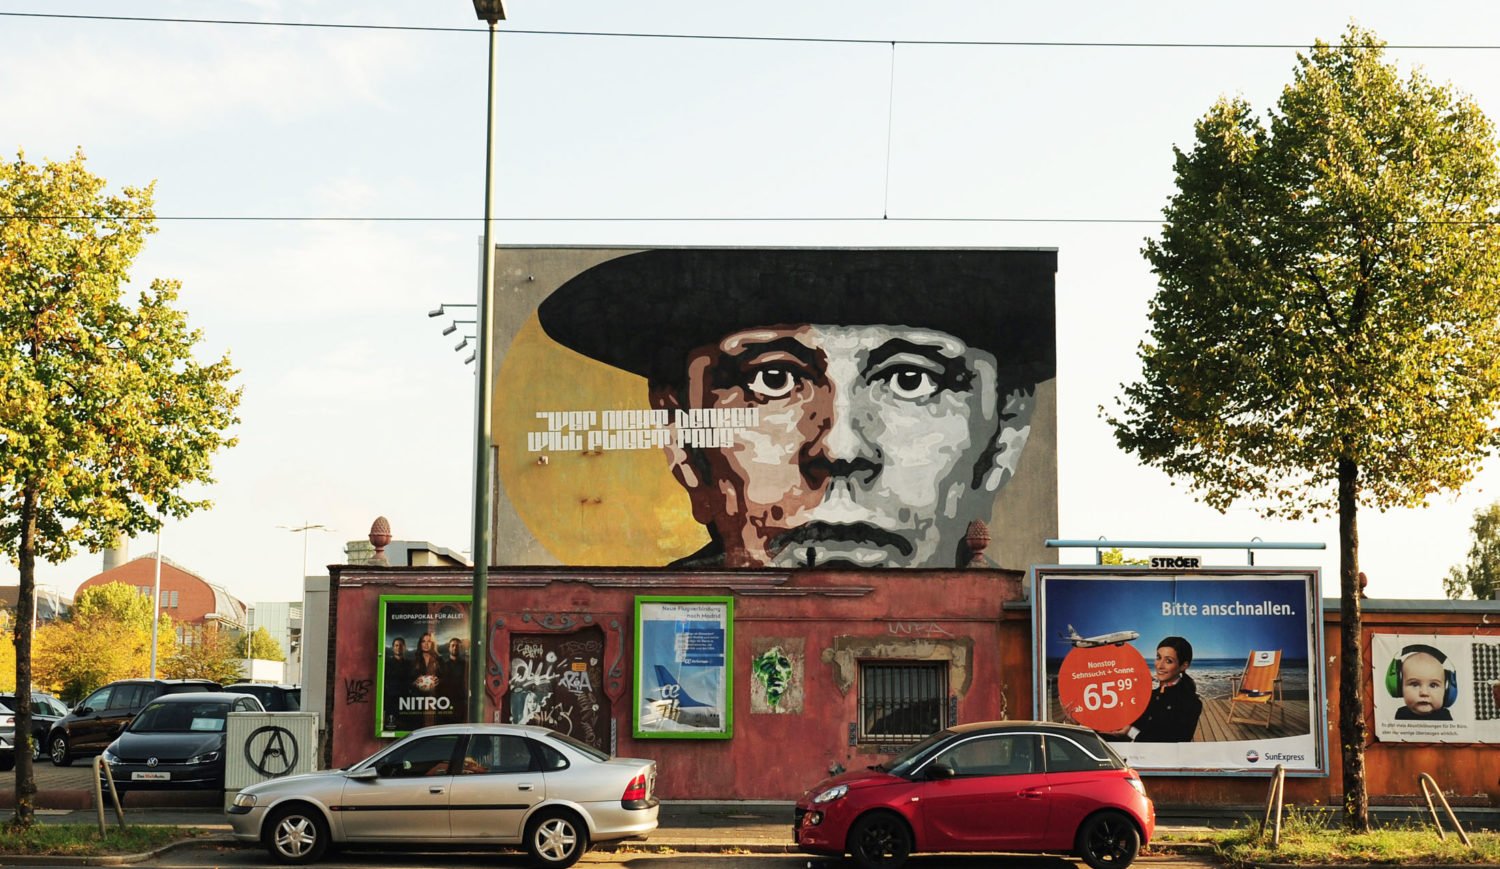 Der Künstler Joseph Beuys ist in Düsseldorf allgegenwärtig, wie hier als Graffiti im Stadtteil Flingern © Düsseldorf Tourismus GmbH/Simone Stammen